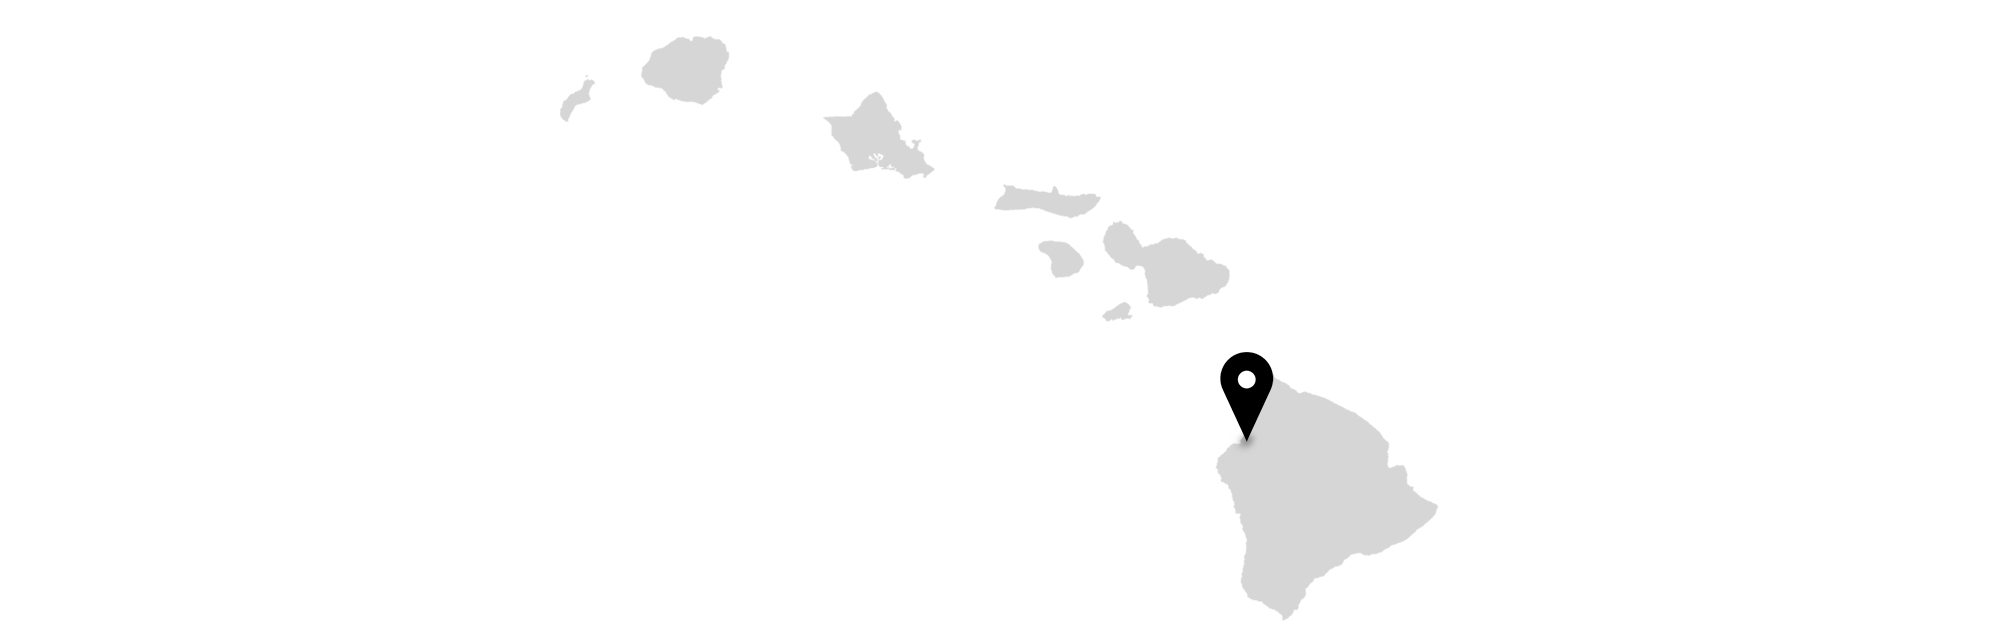 The Big Island on Hawaii map